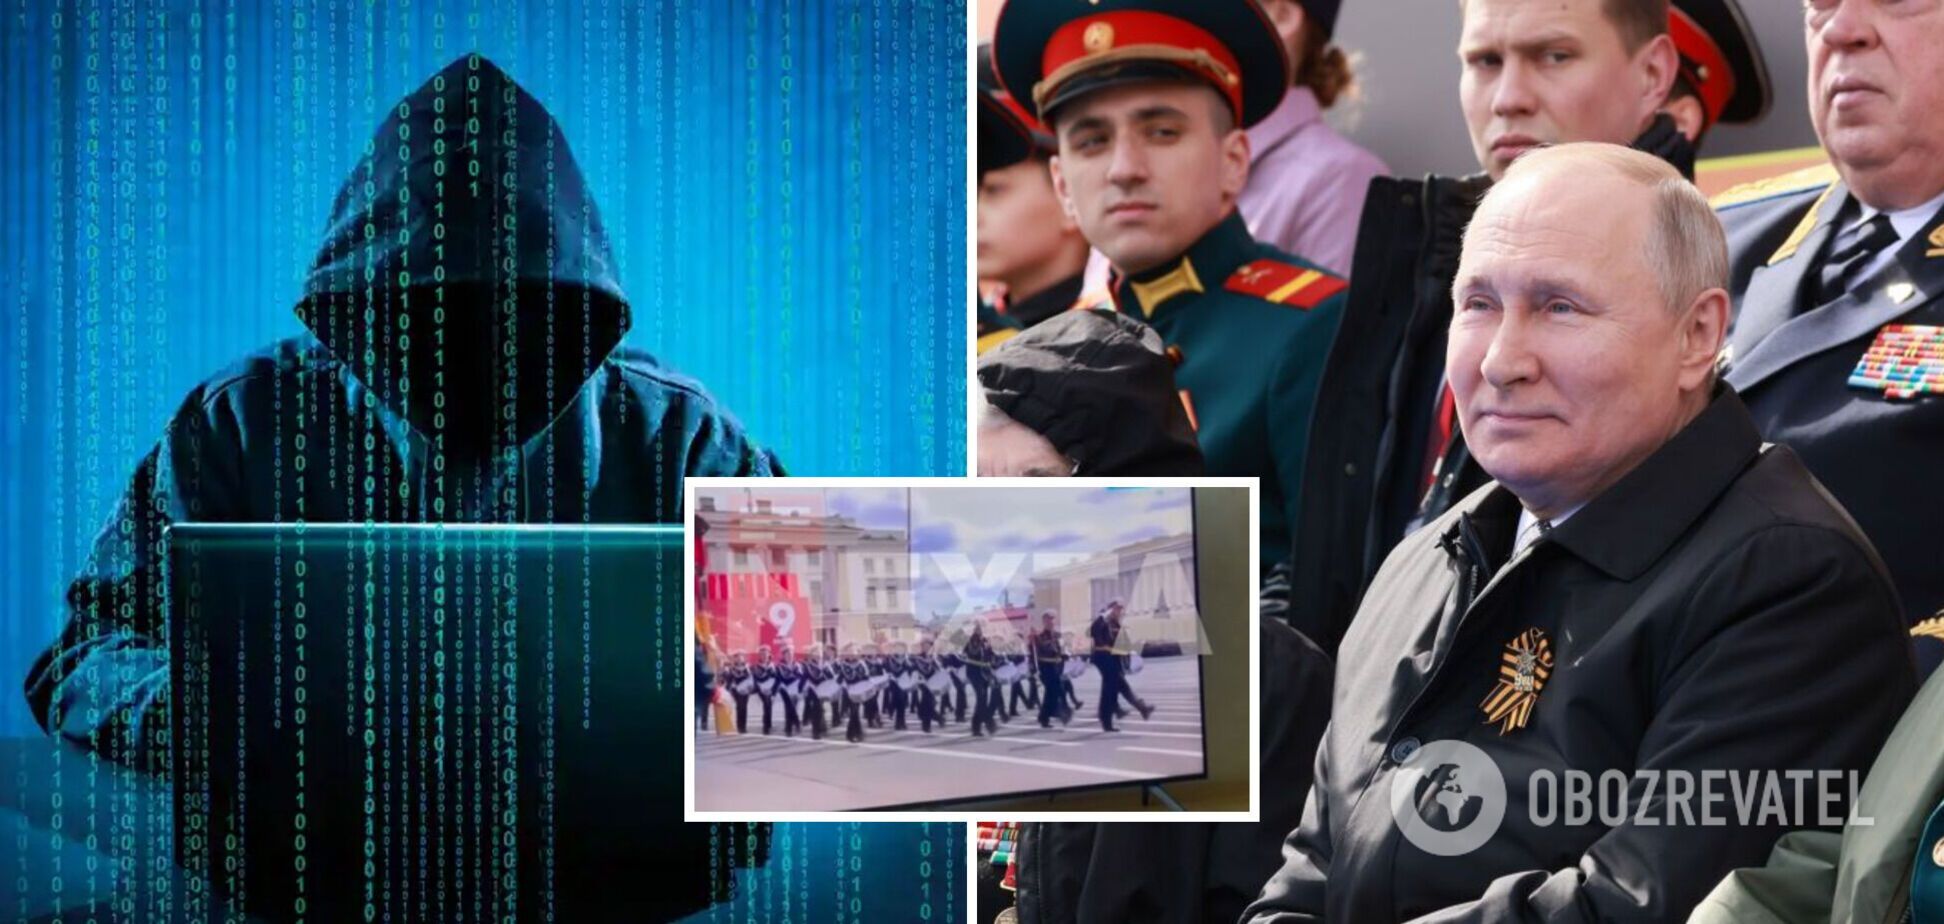 В России на 9 мая зазвучало 'Слава Украине!': хакеры взломали ТВ во время трансляции парада в Москве. Видео